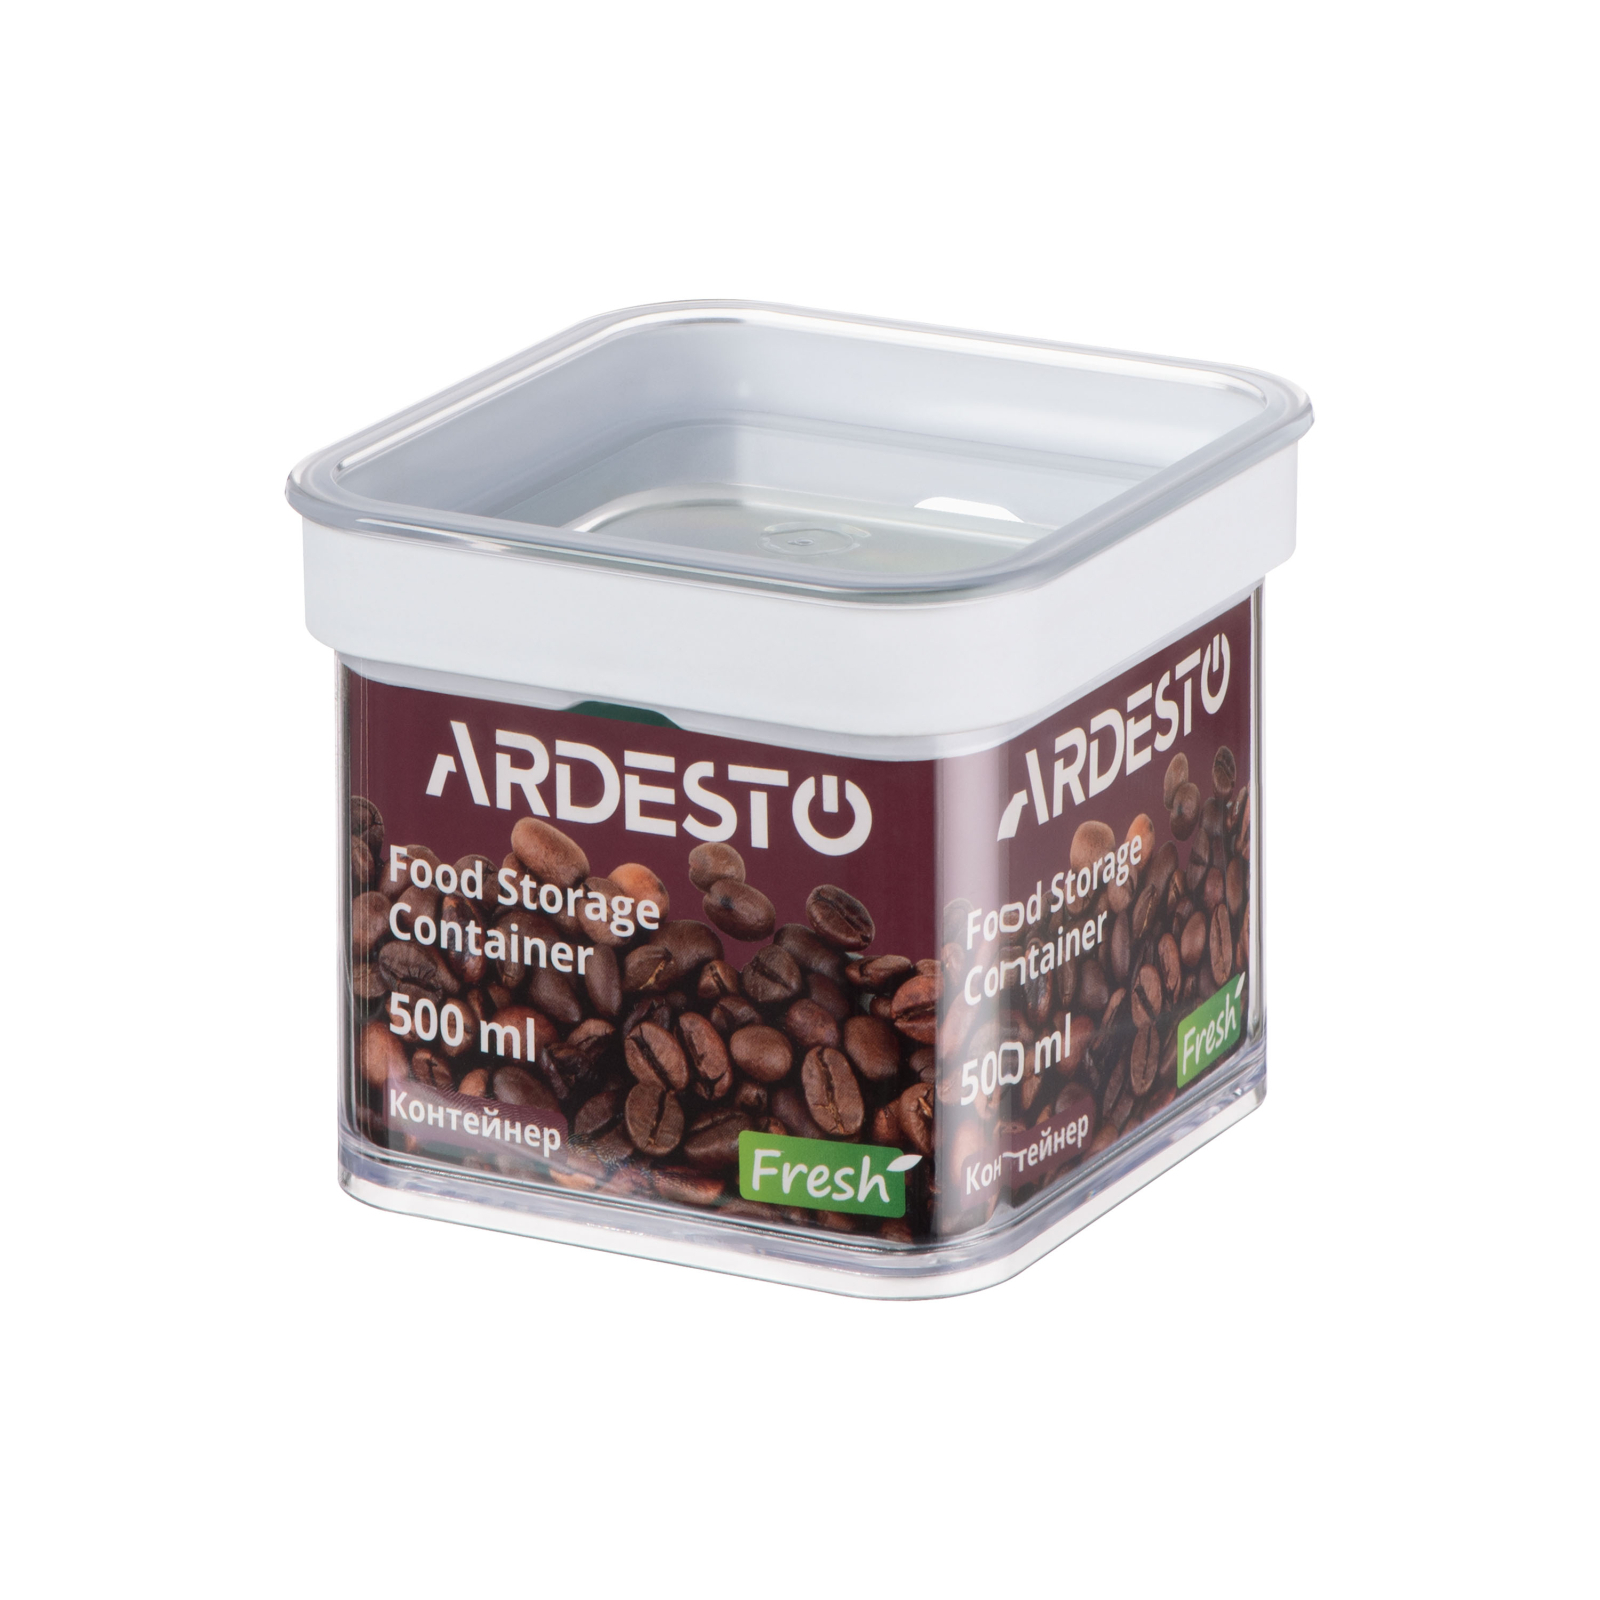 Пищевой контейнер Ardesto Fresh Quadrate 1 л (AR4110FT)